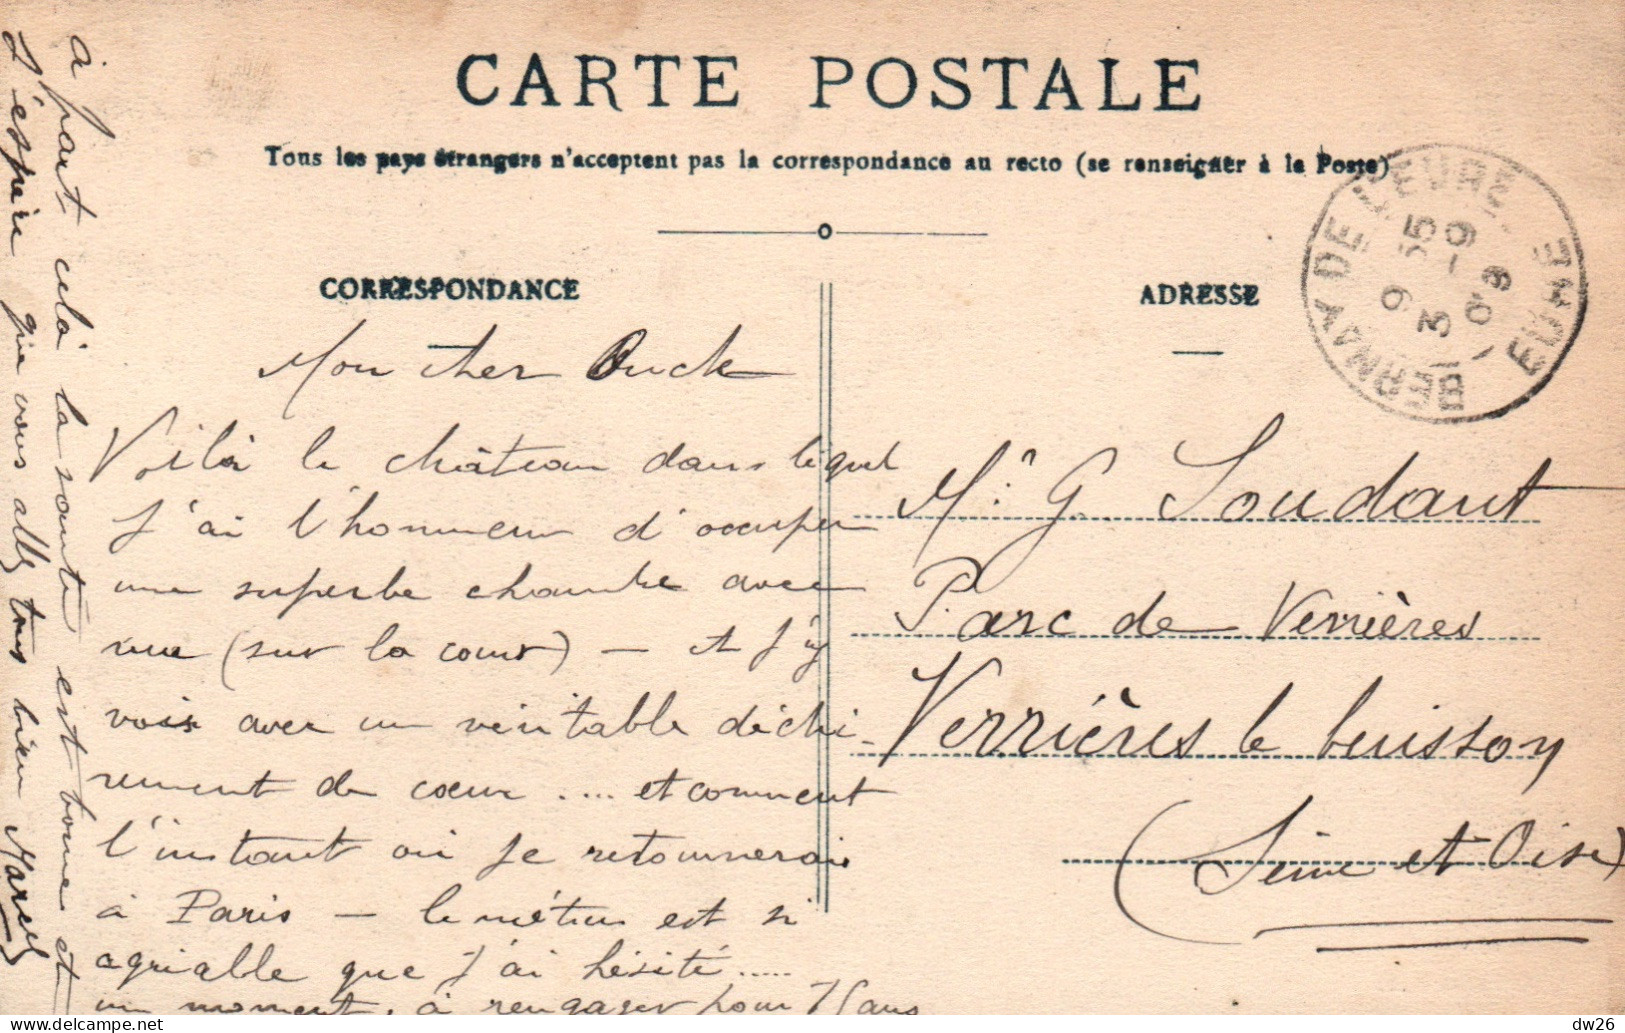 Bernay (Eure) La Caserne Turreau, Militaires à La Grille D'entrée - Carte N.G. De 1909 - Casernes